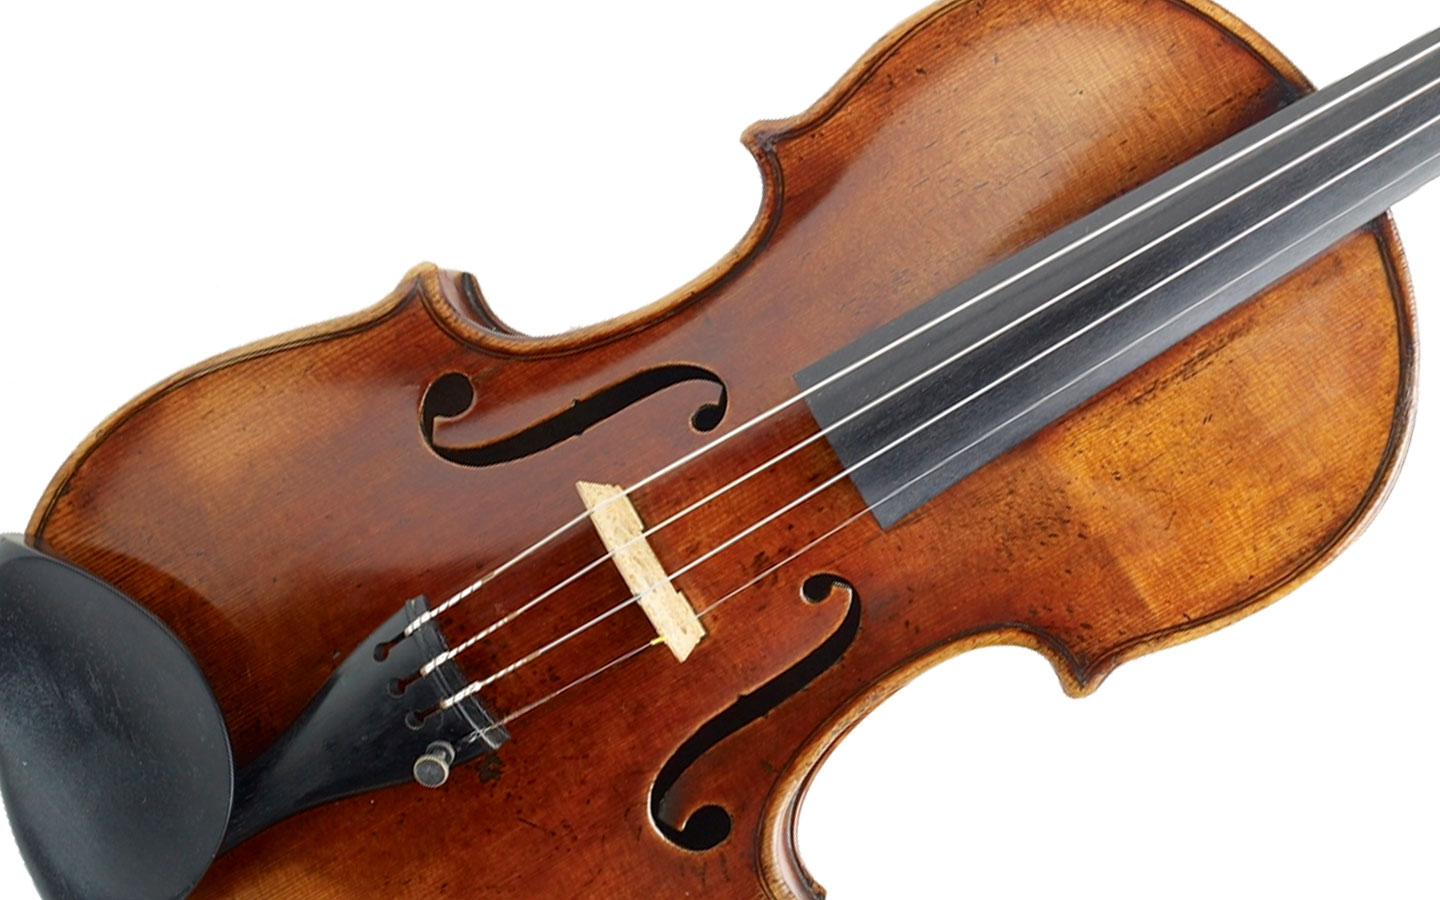 The 1759 Guadagnini Violin